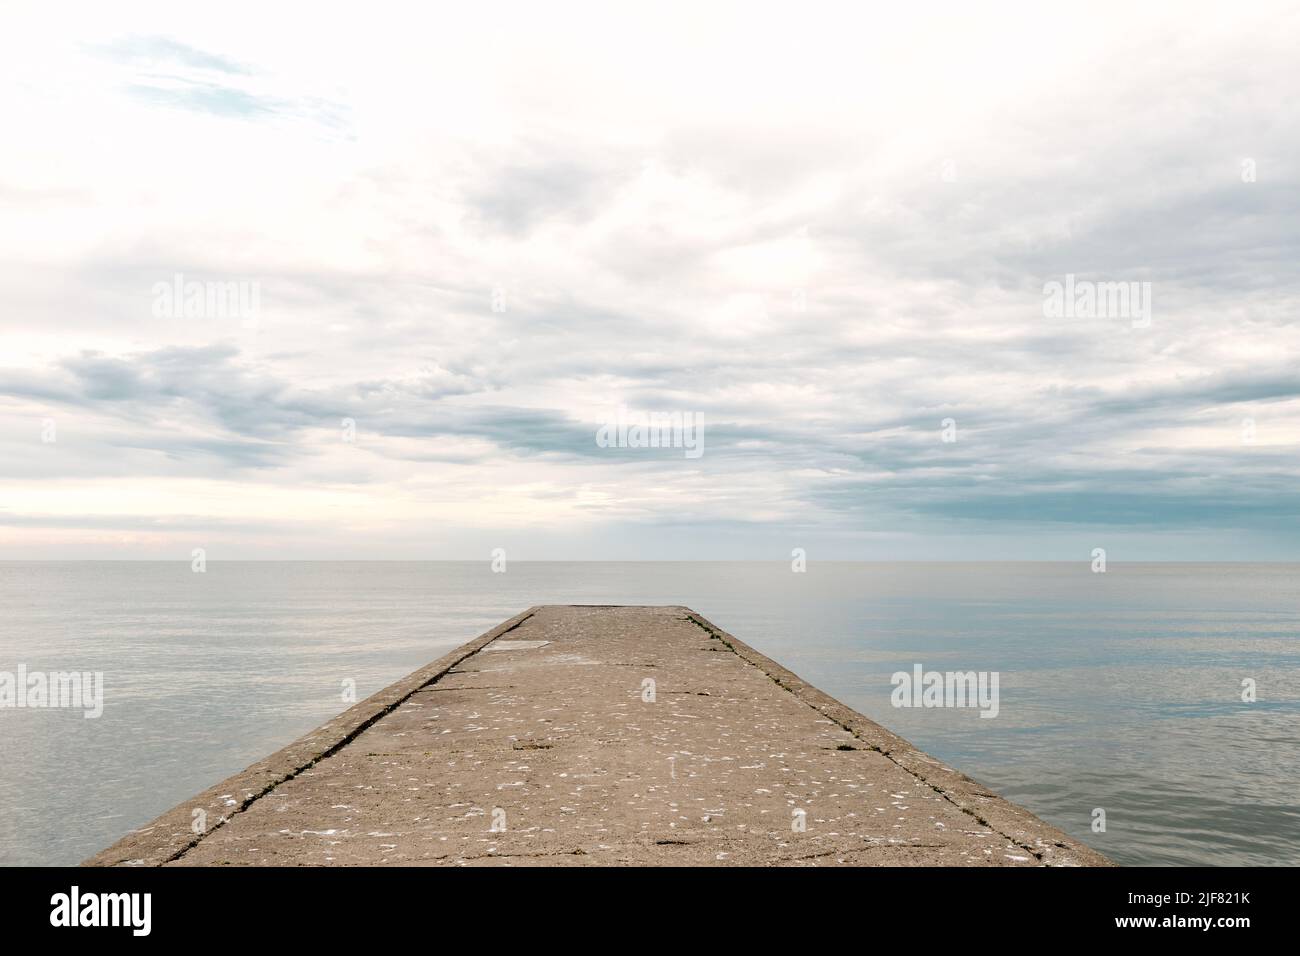 Molo vuoto in cemento al mare con cielo drammatico e acqua calma, abbandonato molo industriale Foto Stock